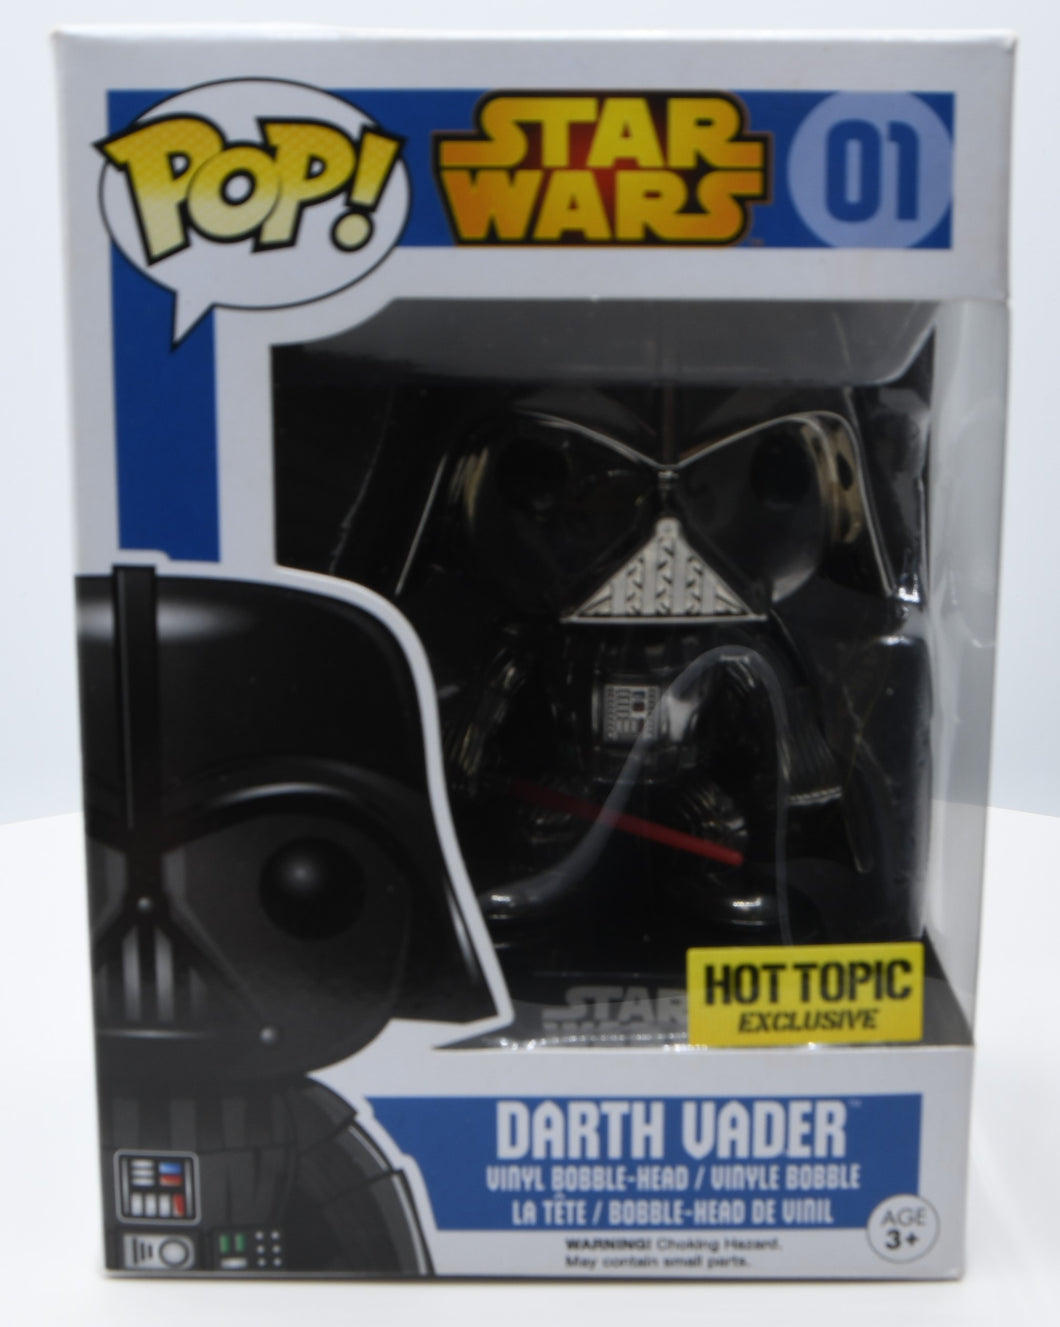 Star Wars Darth Vader Pop! Vinyl Figure #01 Hot Topic Exclusive